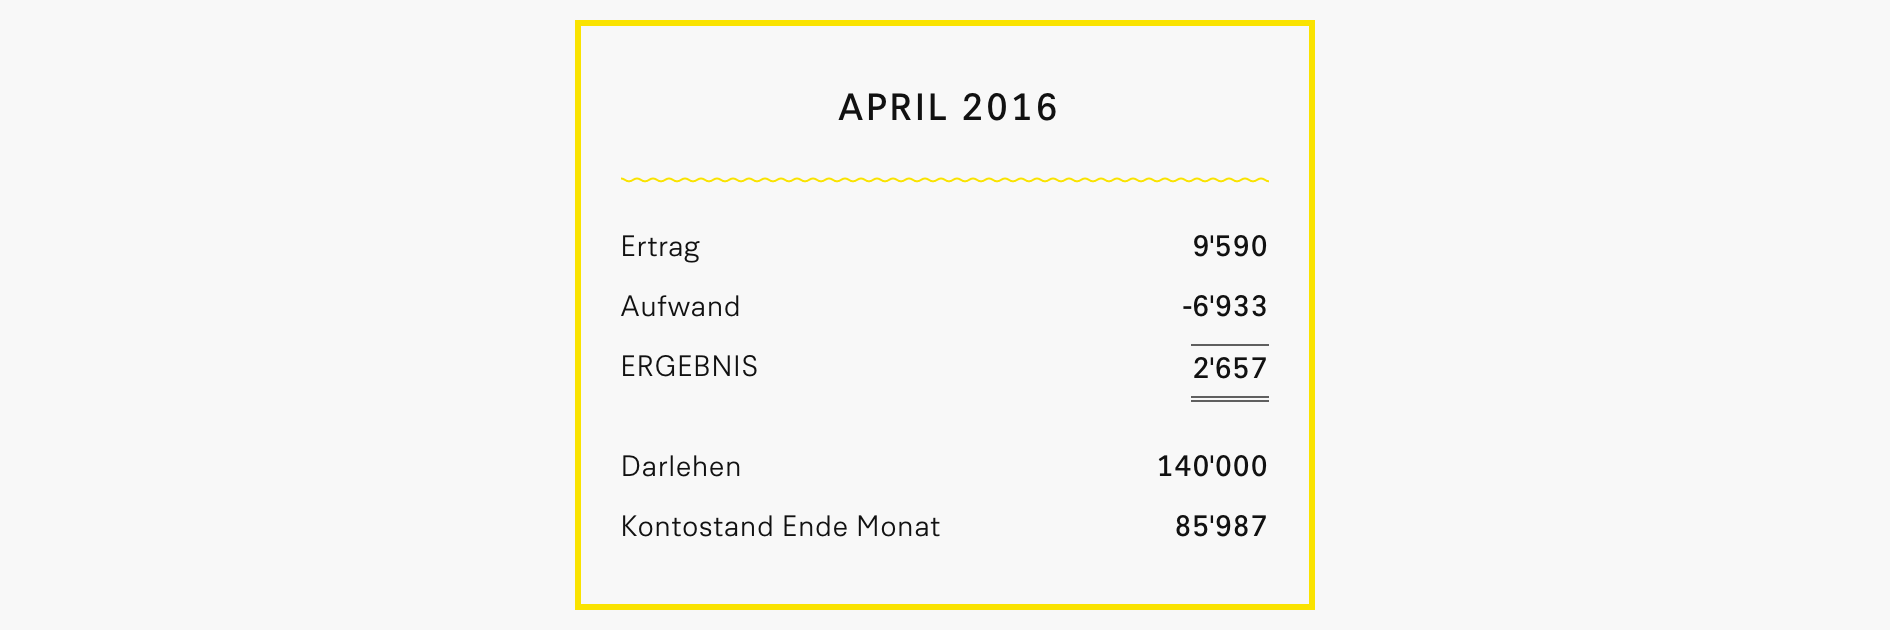 Finanzen April 2016